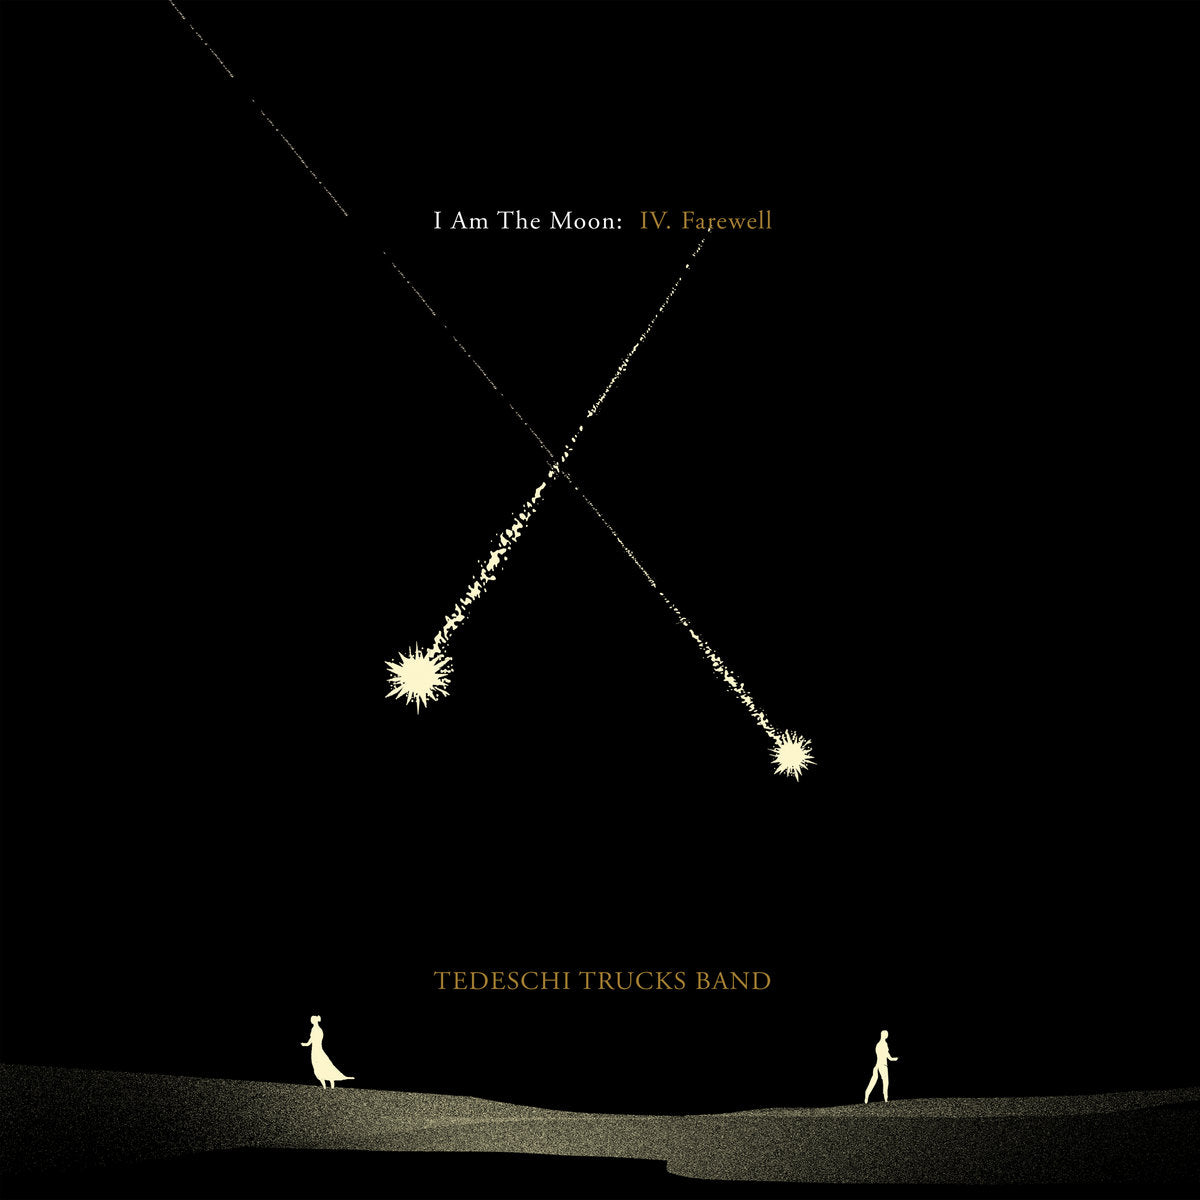 Tedeschi Trucks Band - I Am the Moon: IV. Farewell (Vinyl LP)